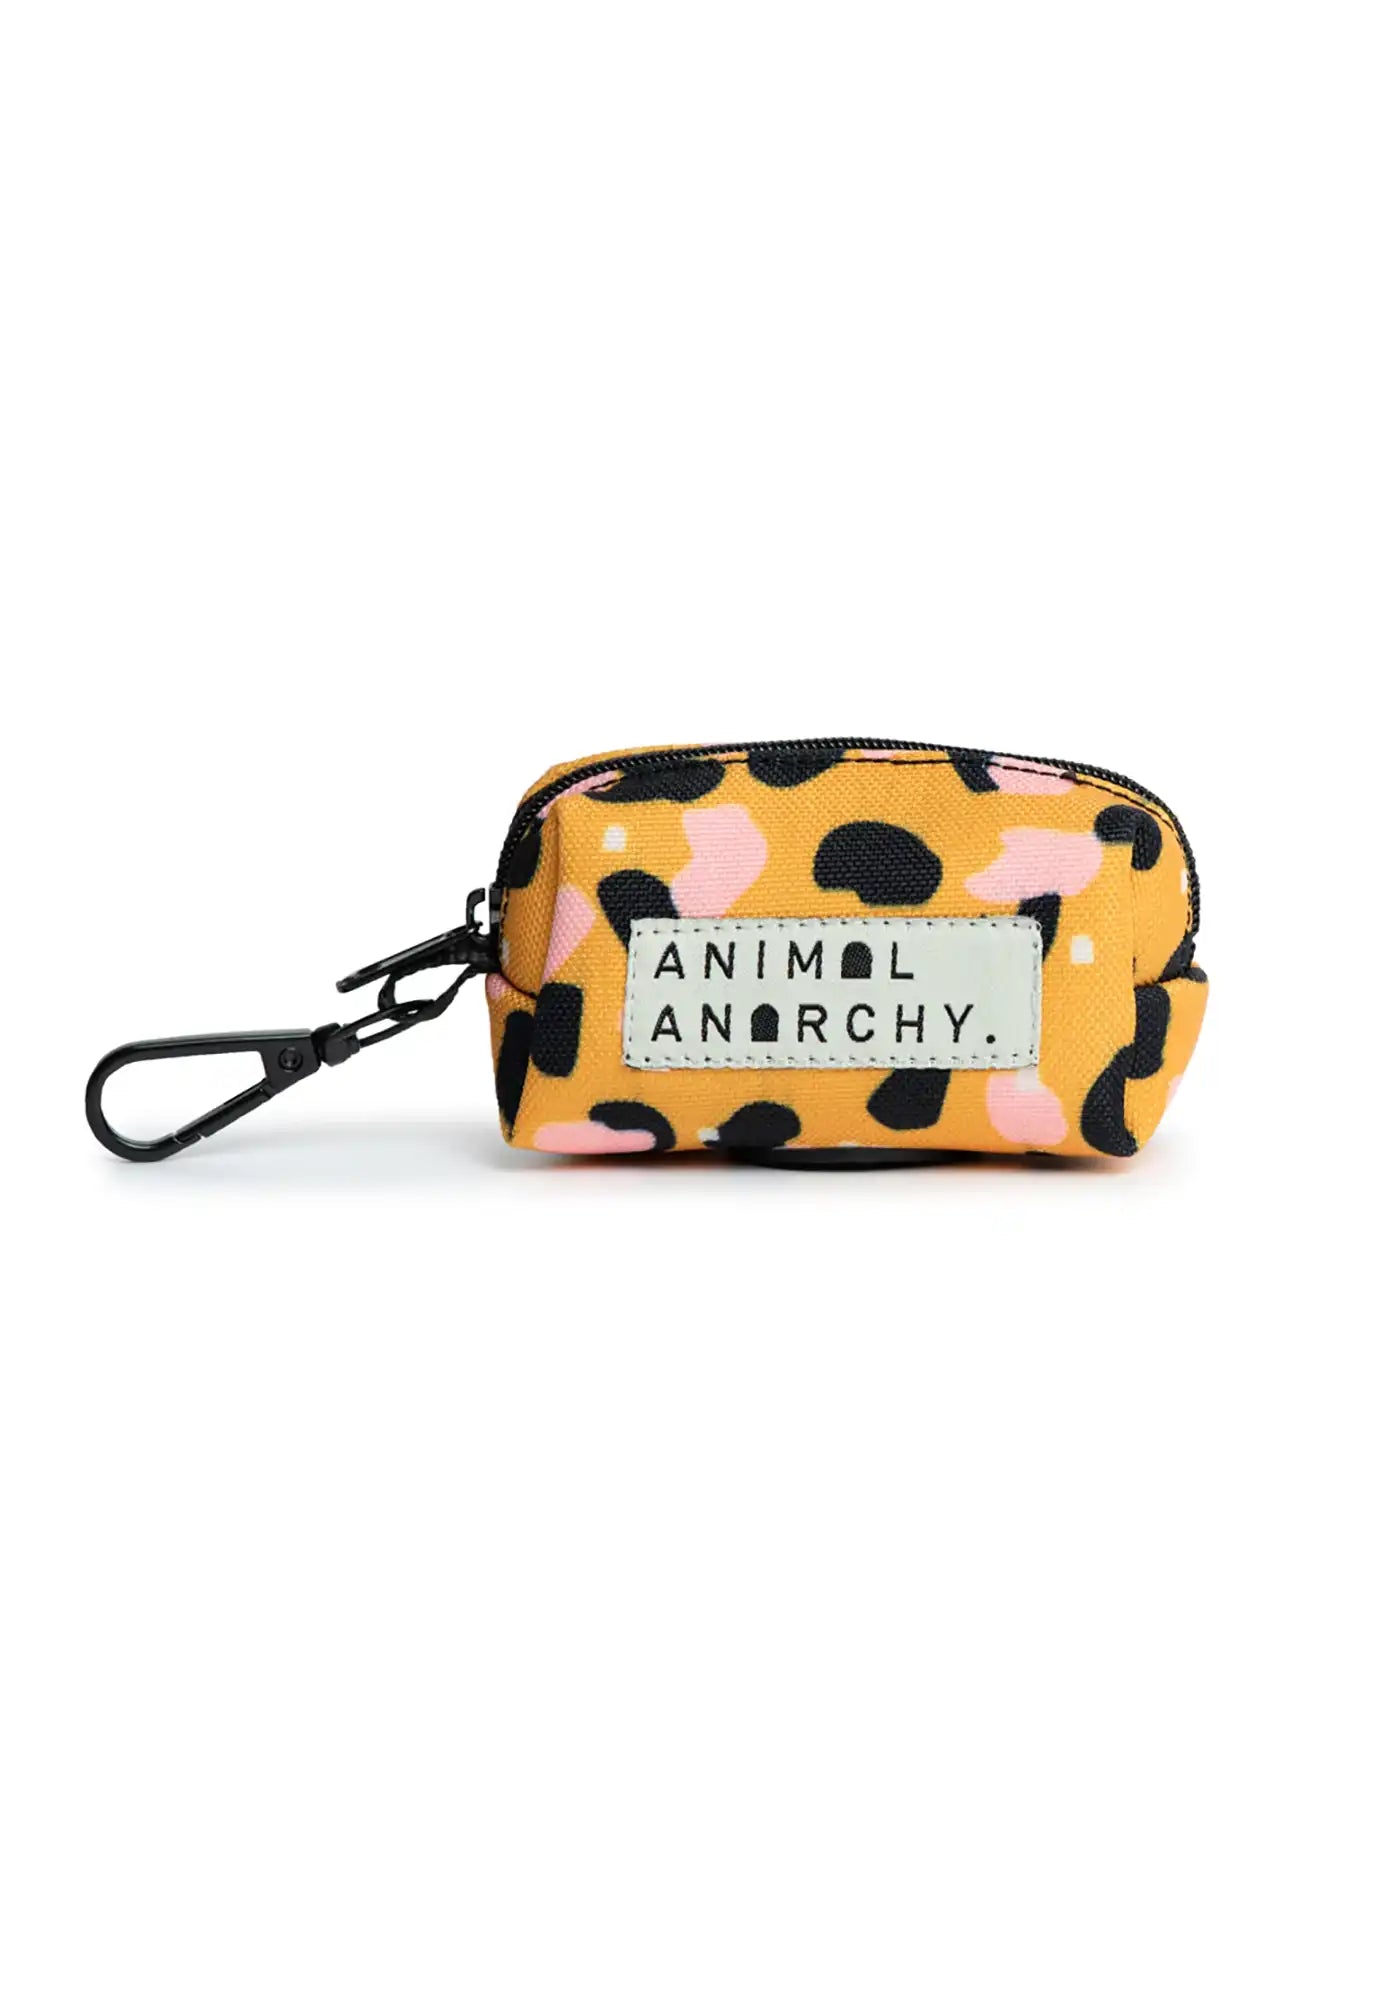 animal anarchy - poop bag holders